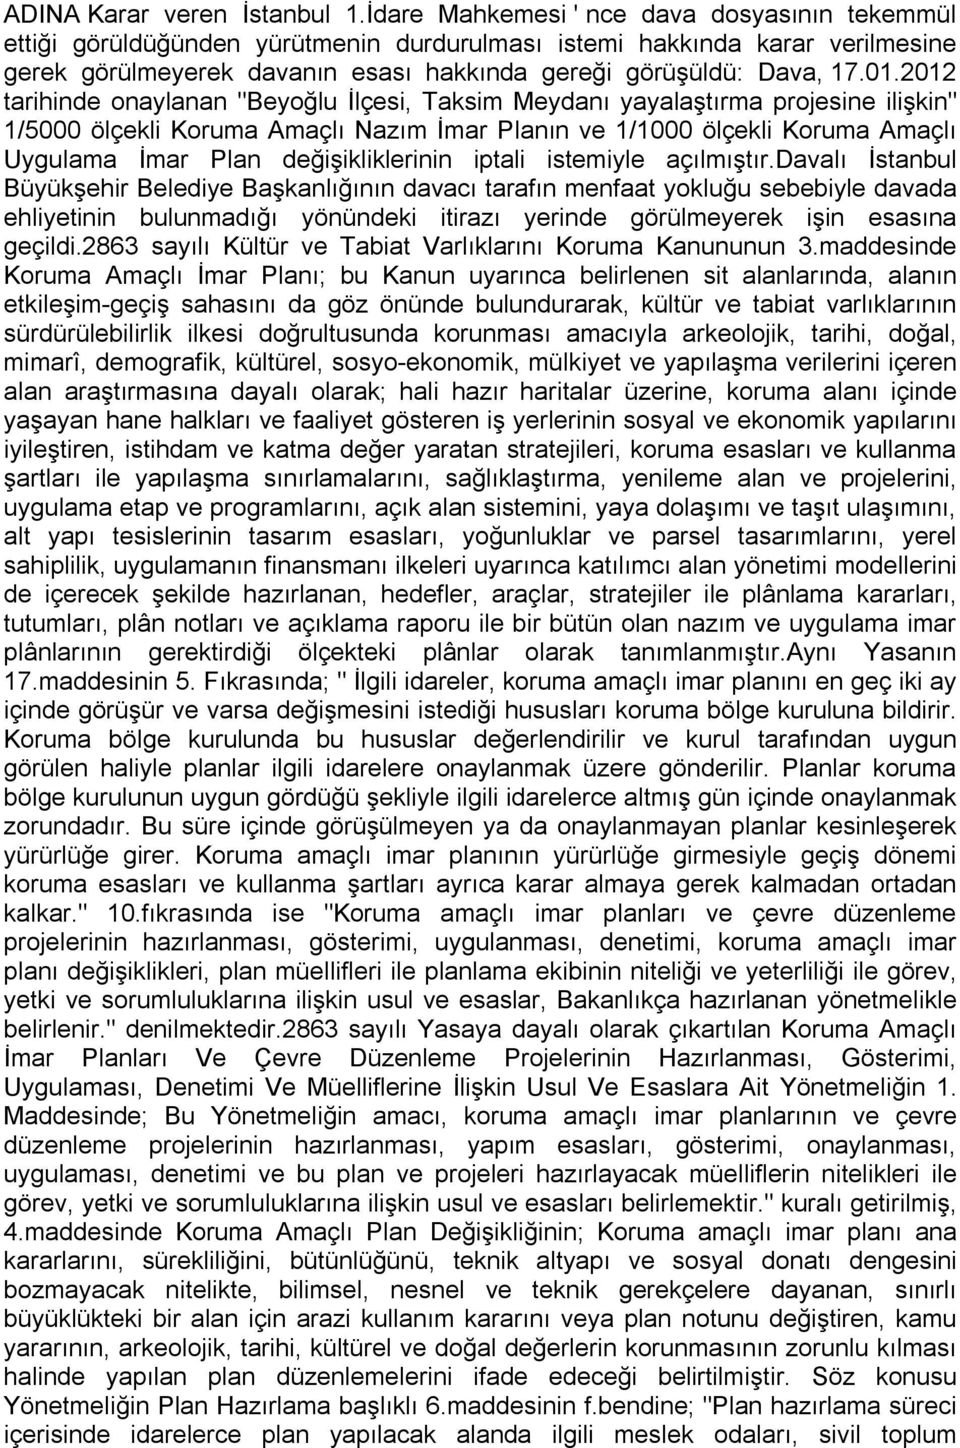 2012 tarihinde onaylanan "Beyoğlu İlçesi, Taksim Meydanı yayalaştırma projesine ilişkin" 1/5000 ölçekli Koruma Amaçlı Nazım İmar Planın ve 1/1000 ölçekli Koruma Amaçlı Uygulama İmar Plan